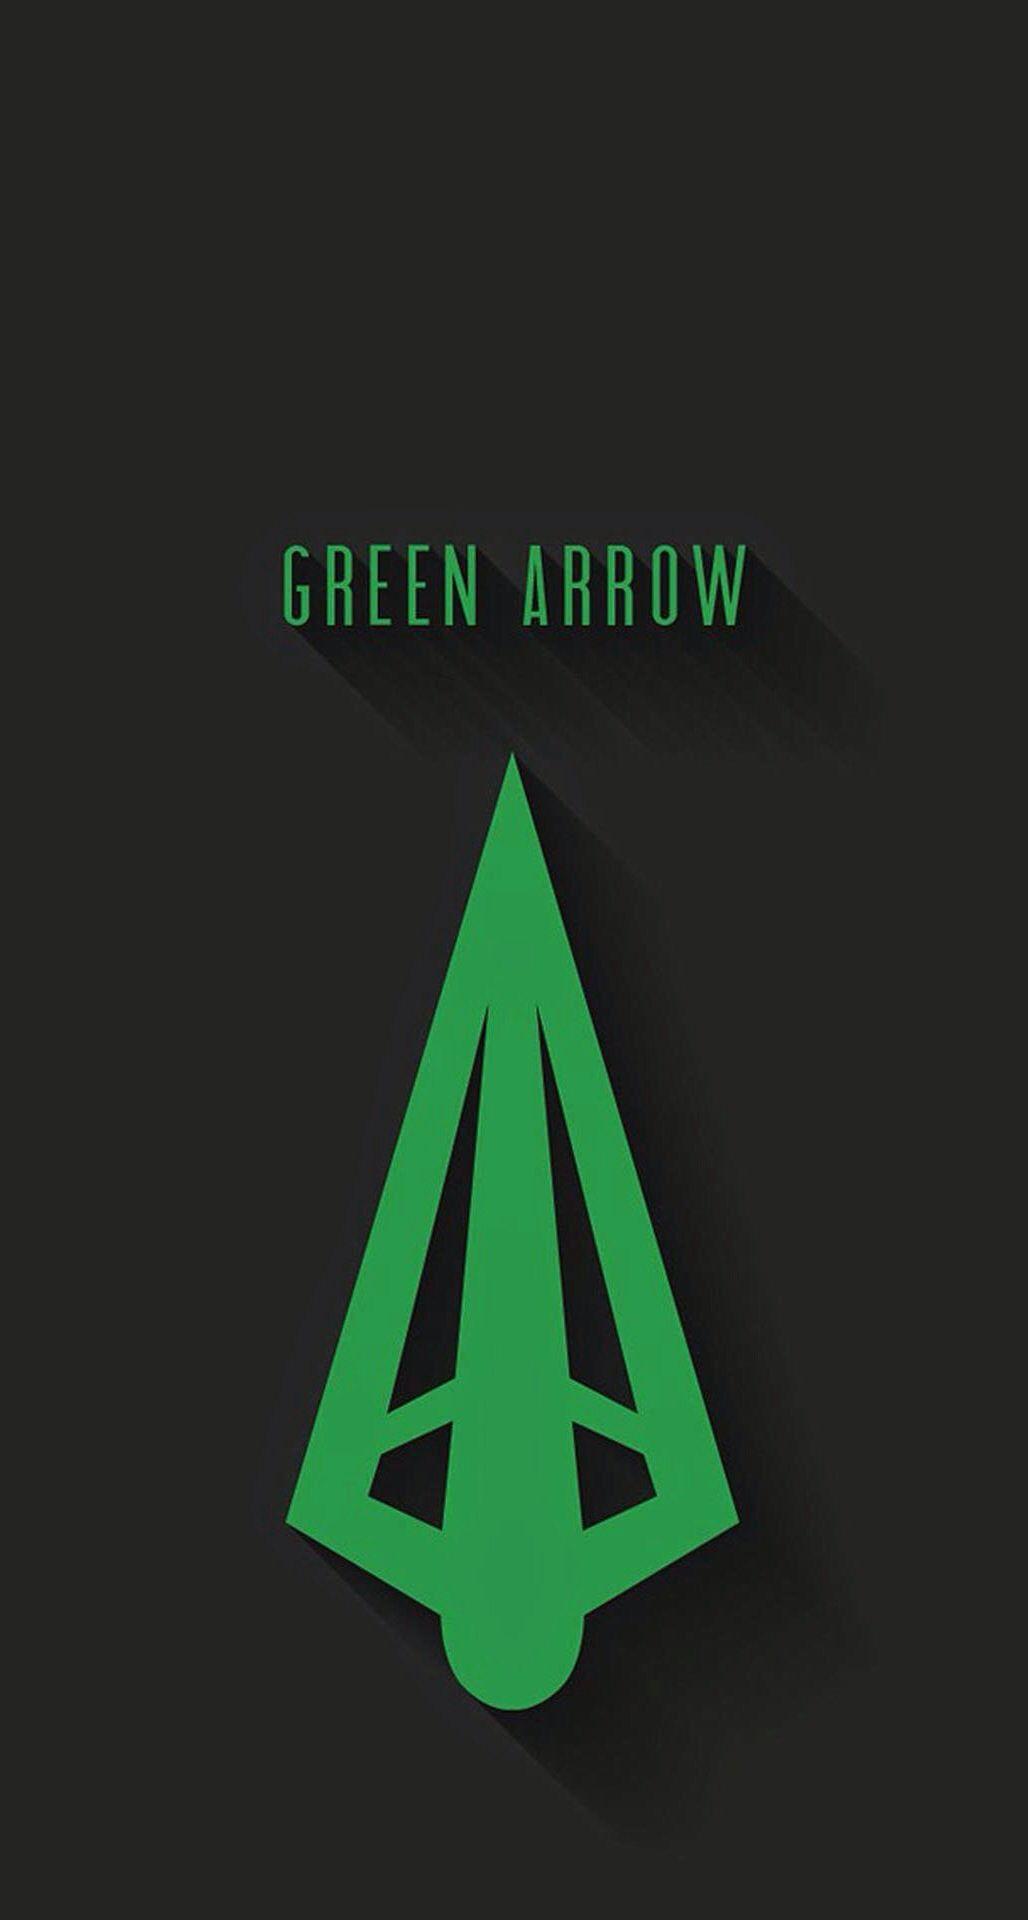 Minimalist Green Arrow iPhone Wallpaper Free